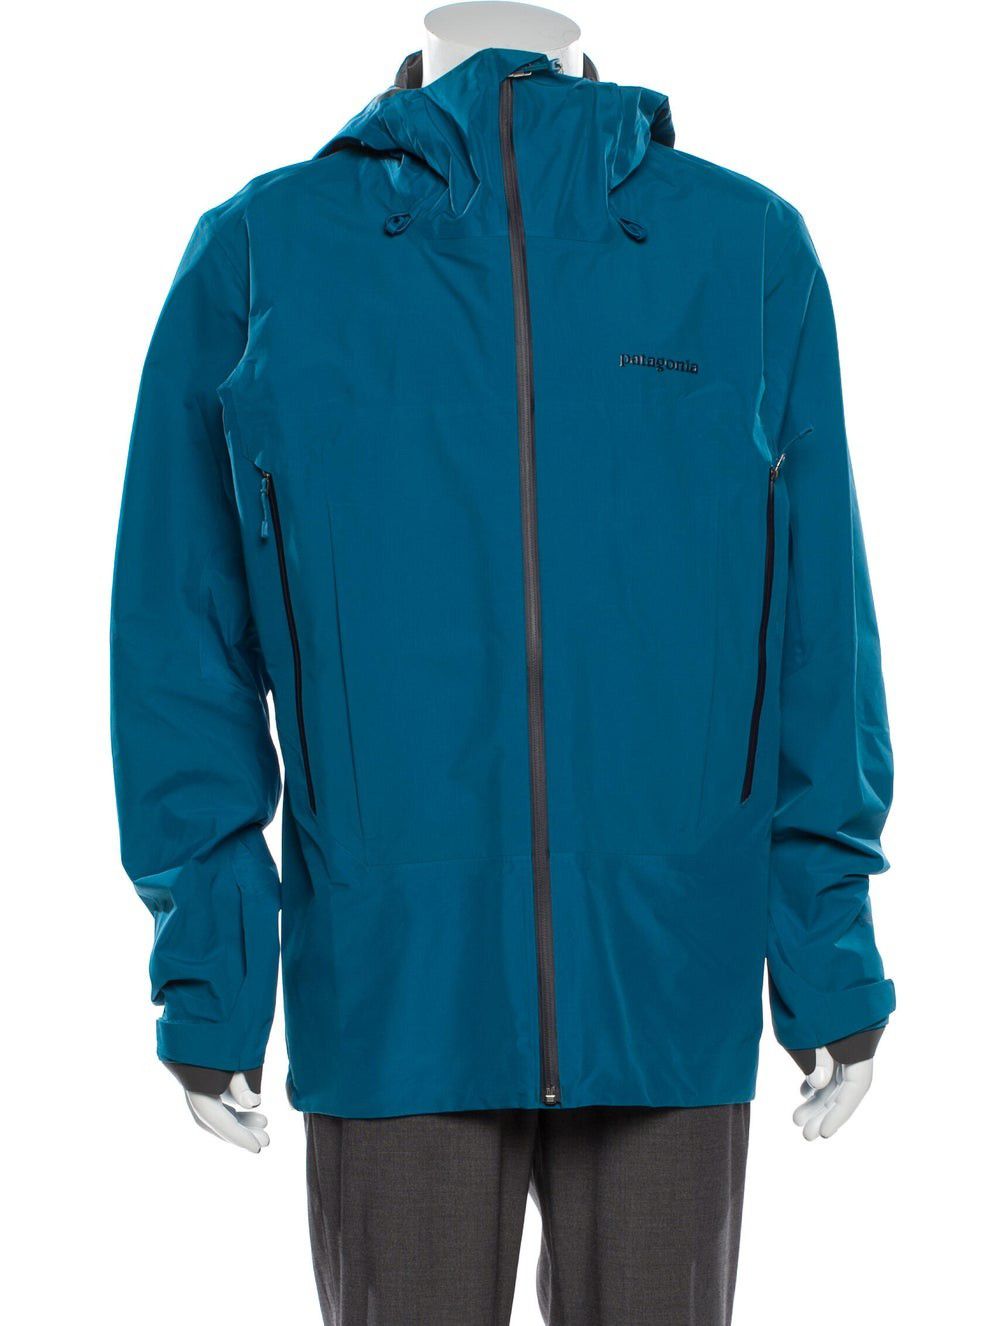 Patagonia Super Alpine GoreTex Jacket Blue Medium New $600